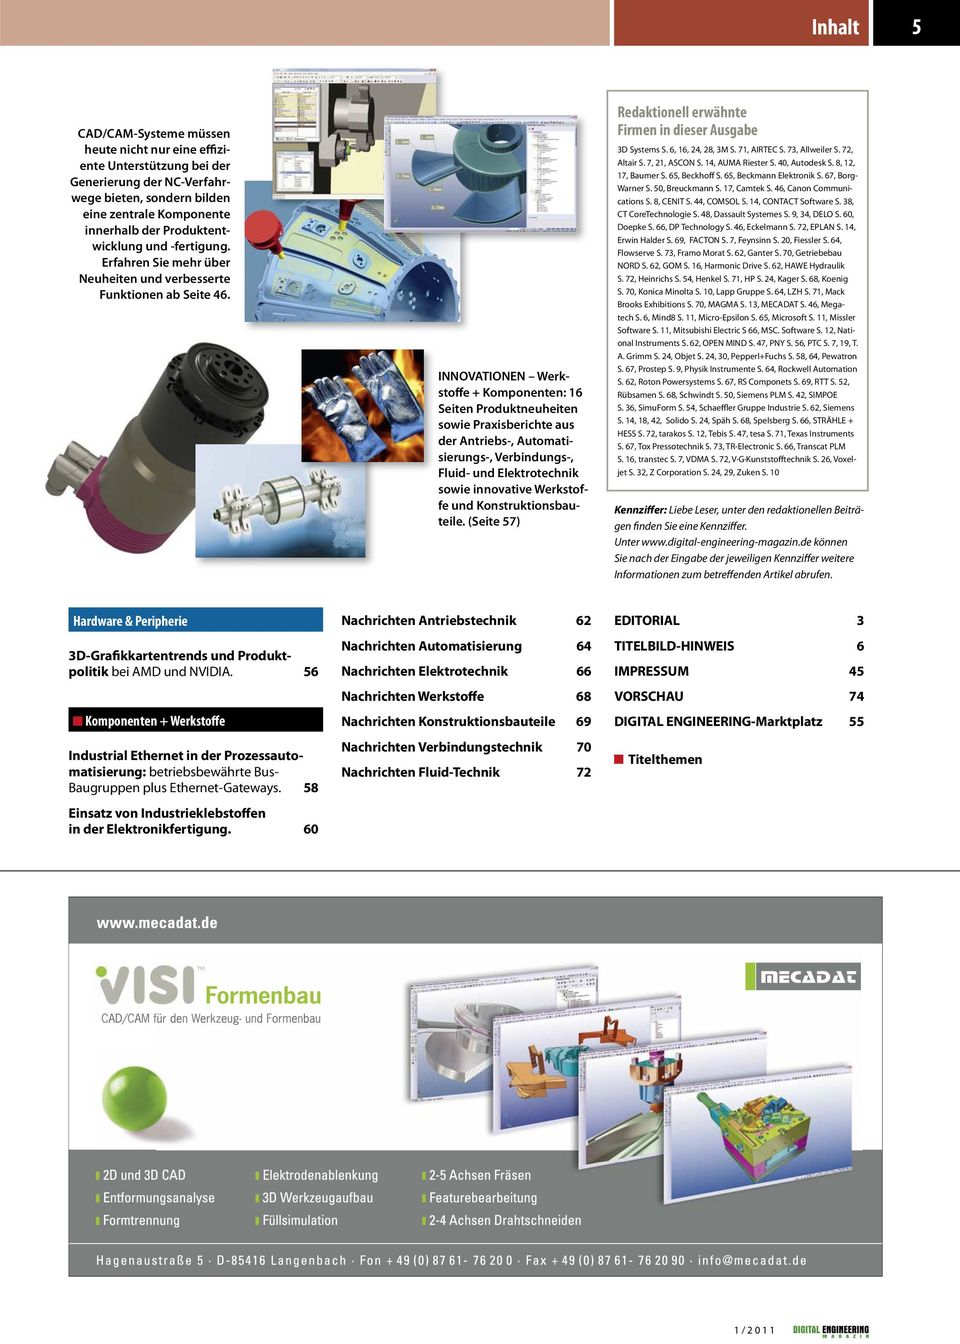 INNOVATIONEN Werkstoffe + Komponenten: 16 Seiten Produktneuheiten sowie Praxisberichte aus der Antriebs-, Automatisierungs-, Verbindungs-, Fluid- und Elektrotechnik sowie innovative Werkstoffe und